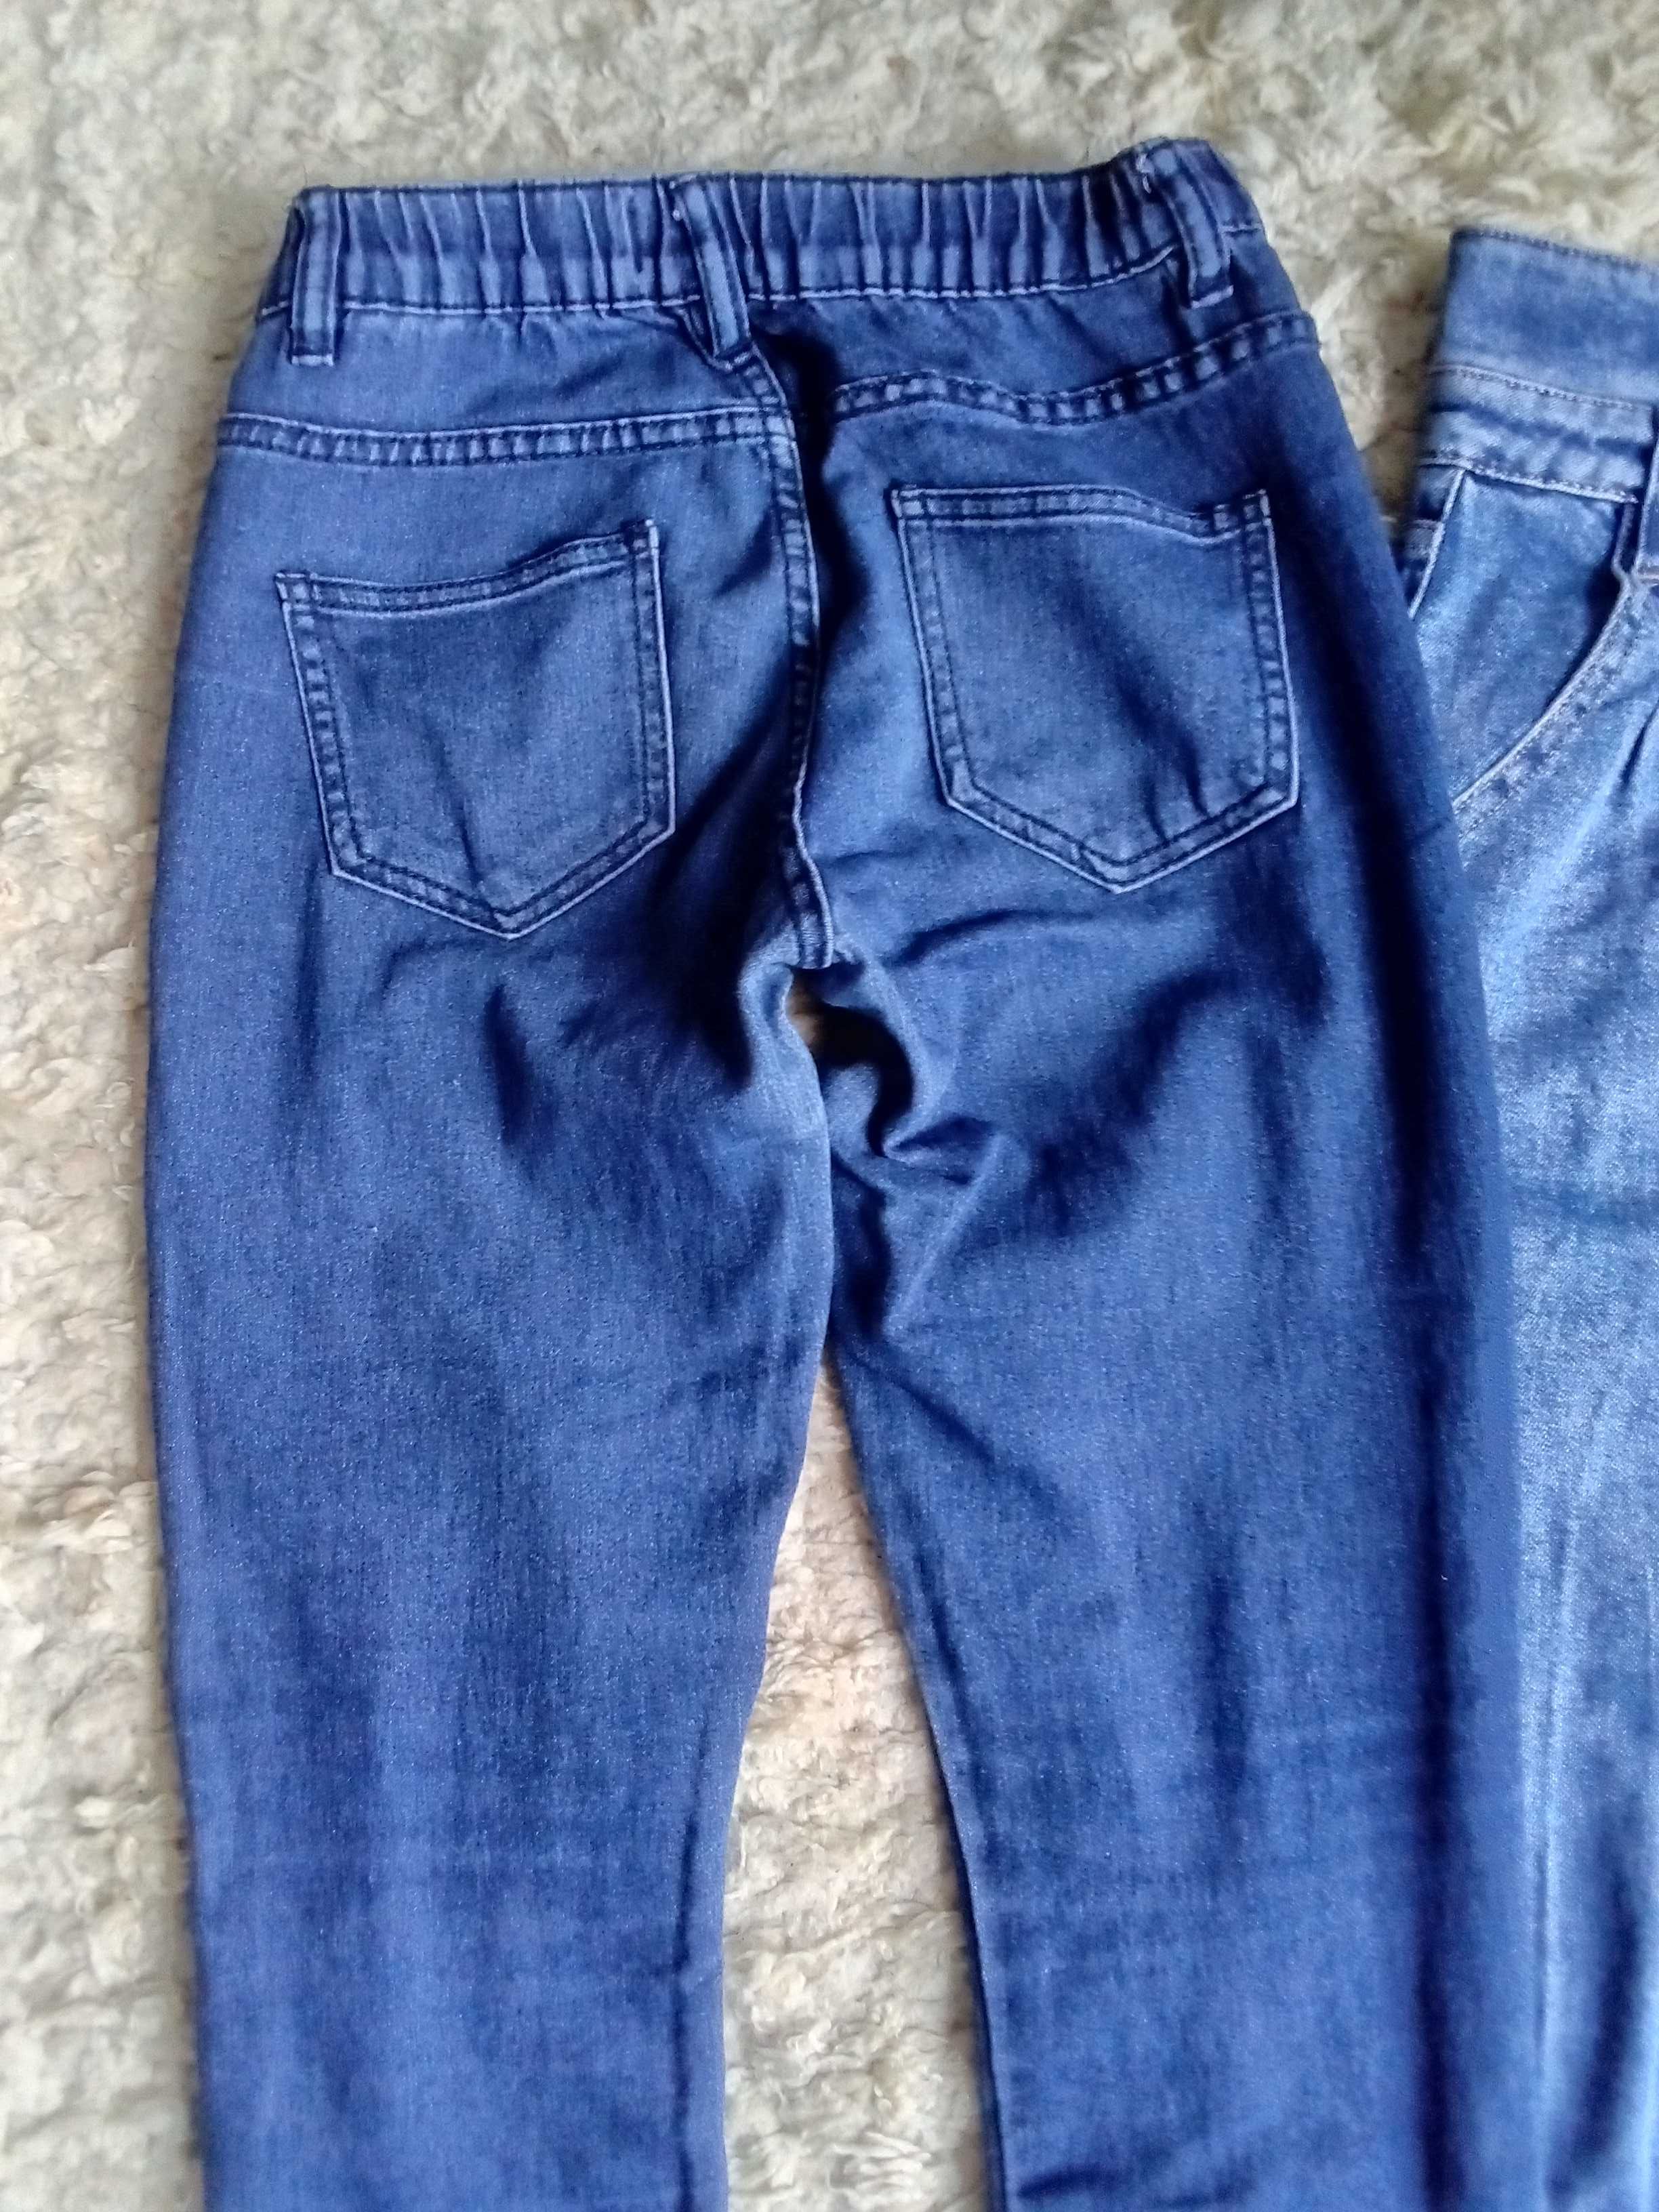 Zestaw ubrań bawełnianych spodni dziewczęcych damskich 164 S jeansy